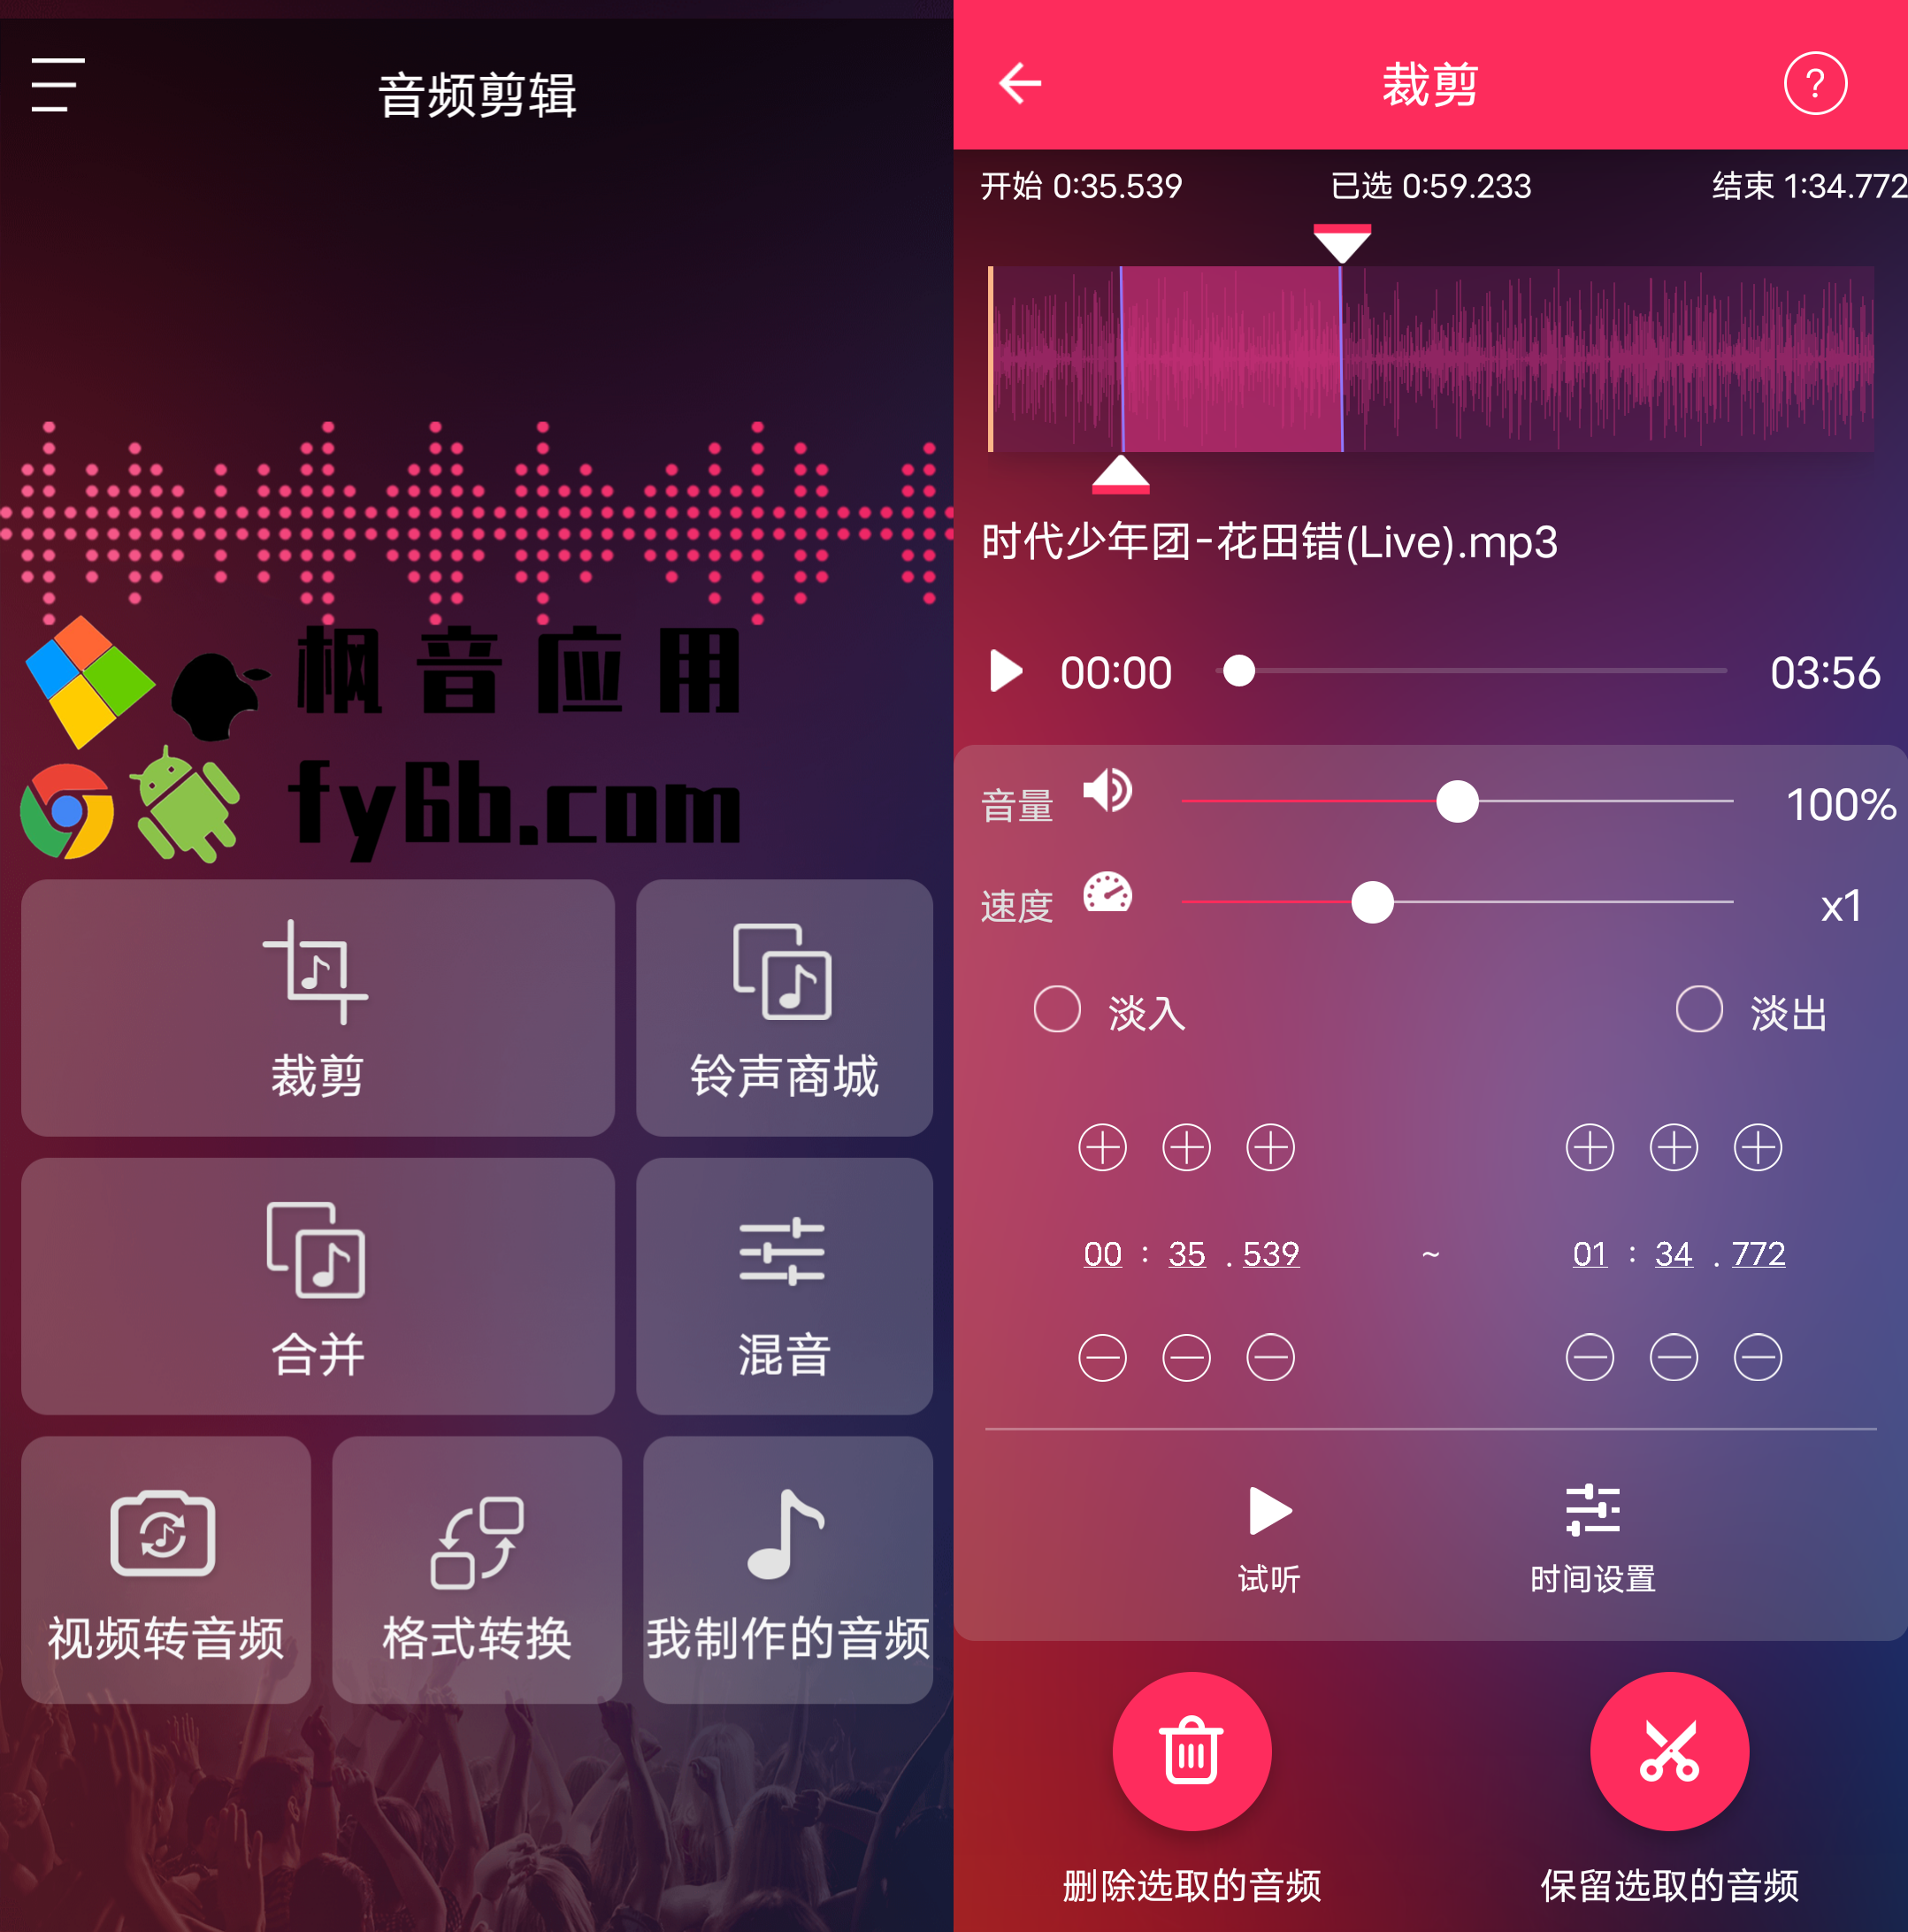 Android 音频裁剪大师_21.5.24 专业版